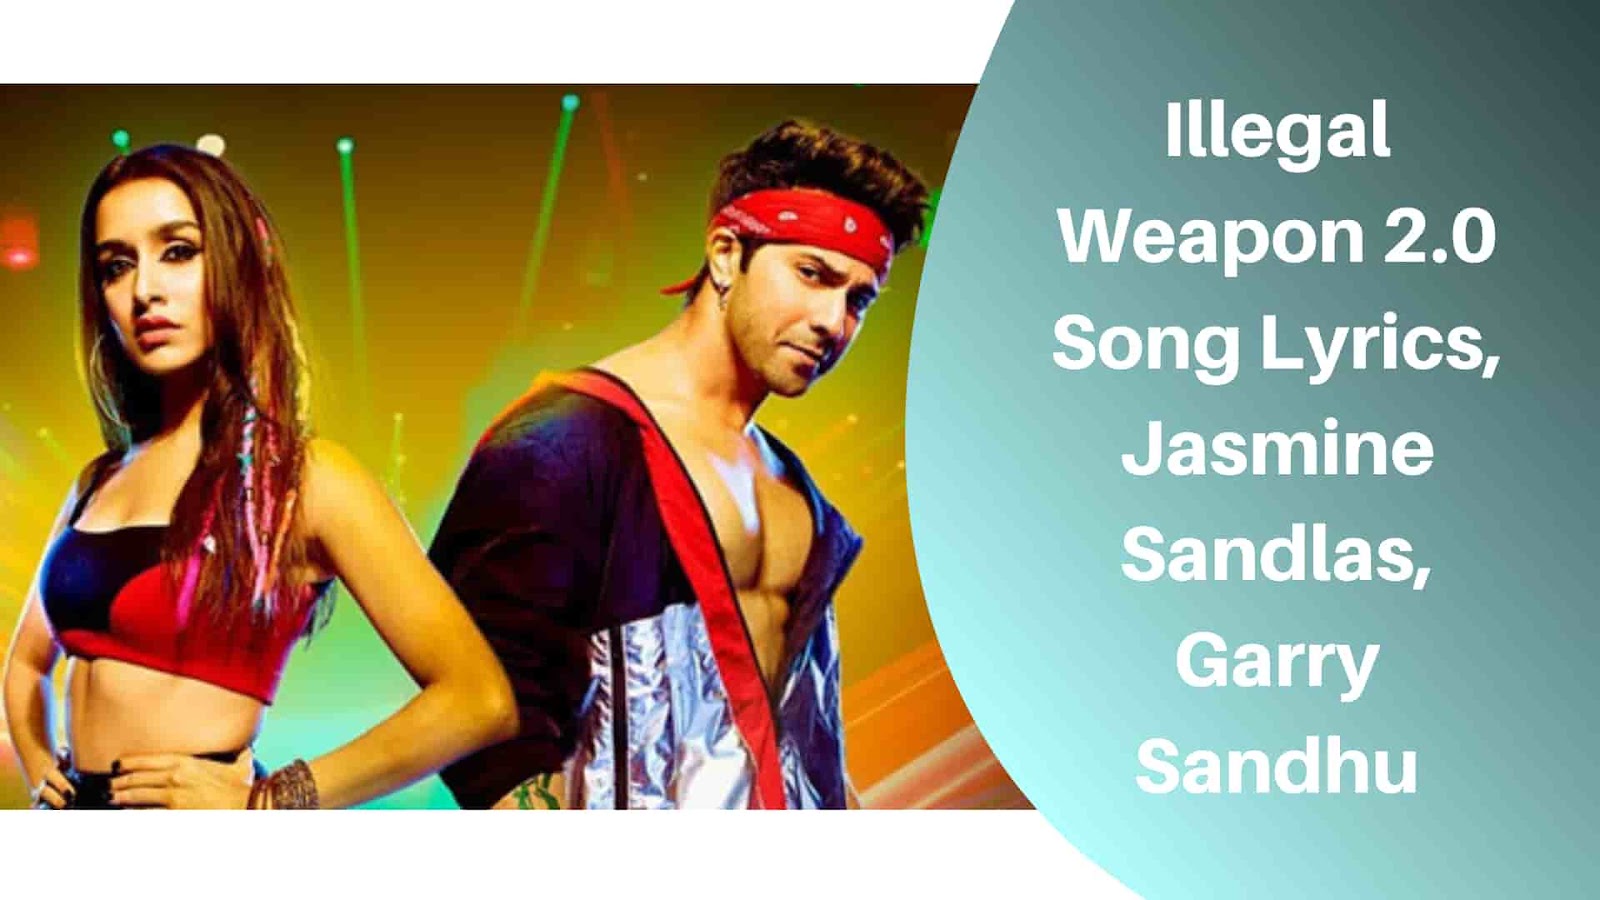 Illegal Weapon 2.0 Song Lyrics, Jasmine Sandlas, Garry Sandhu